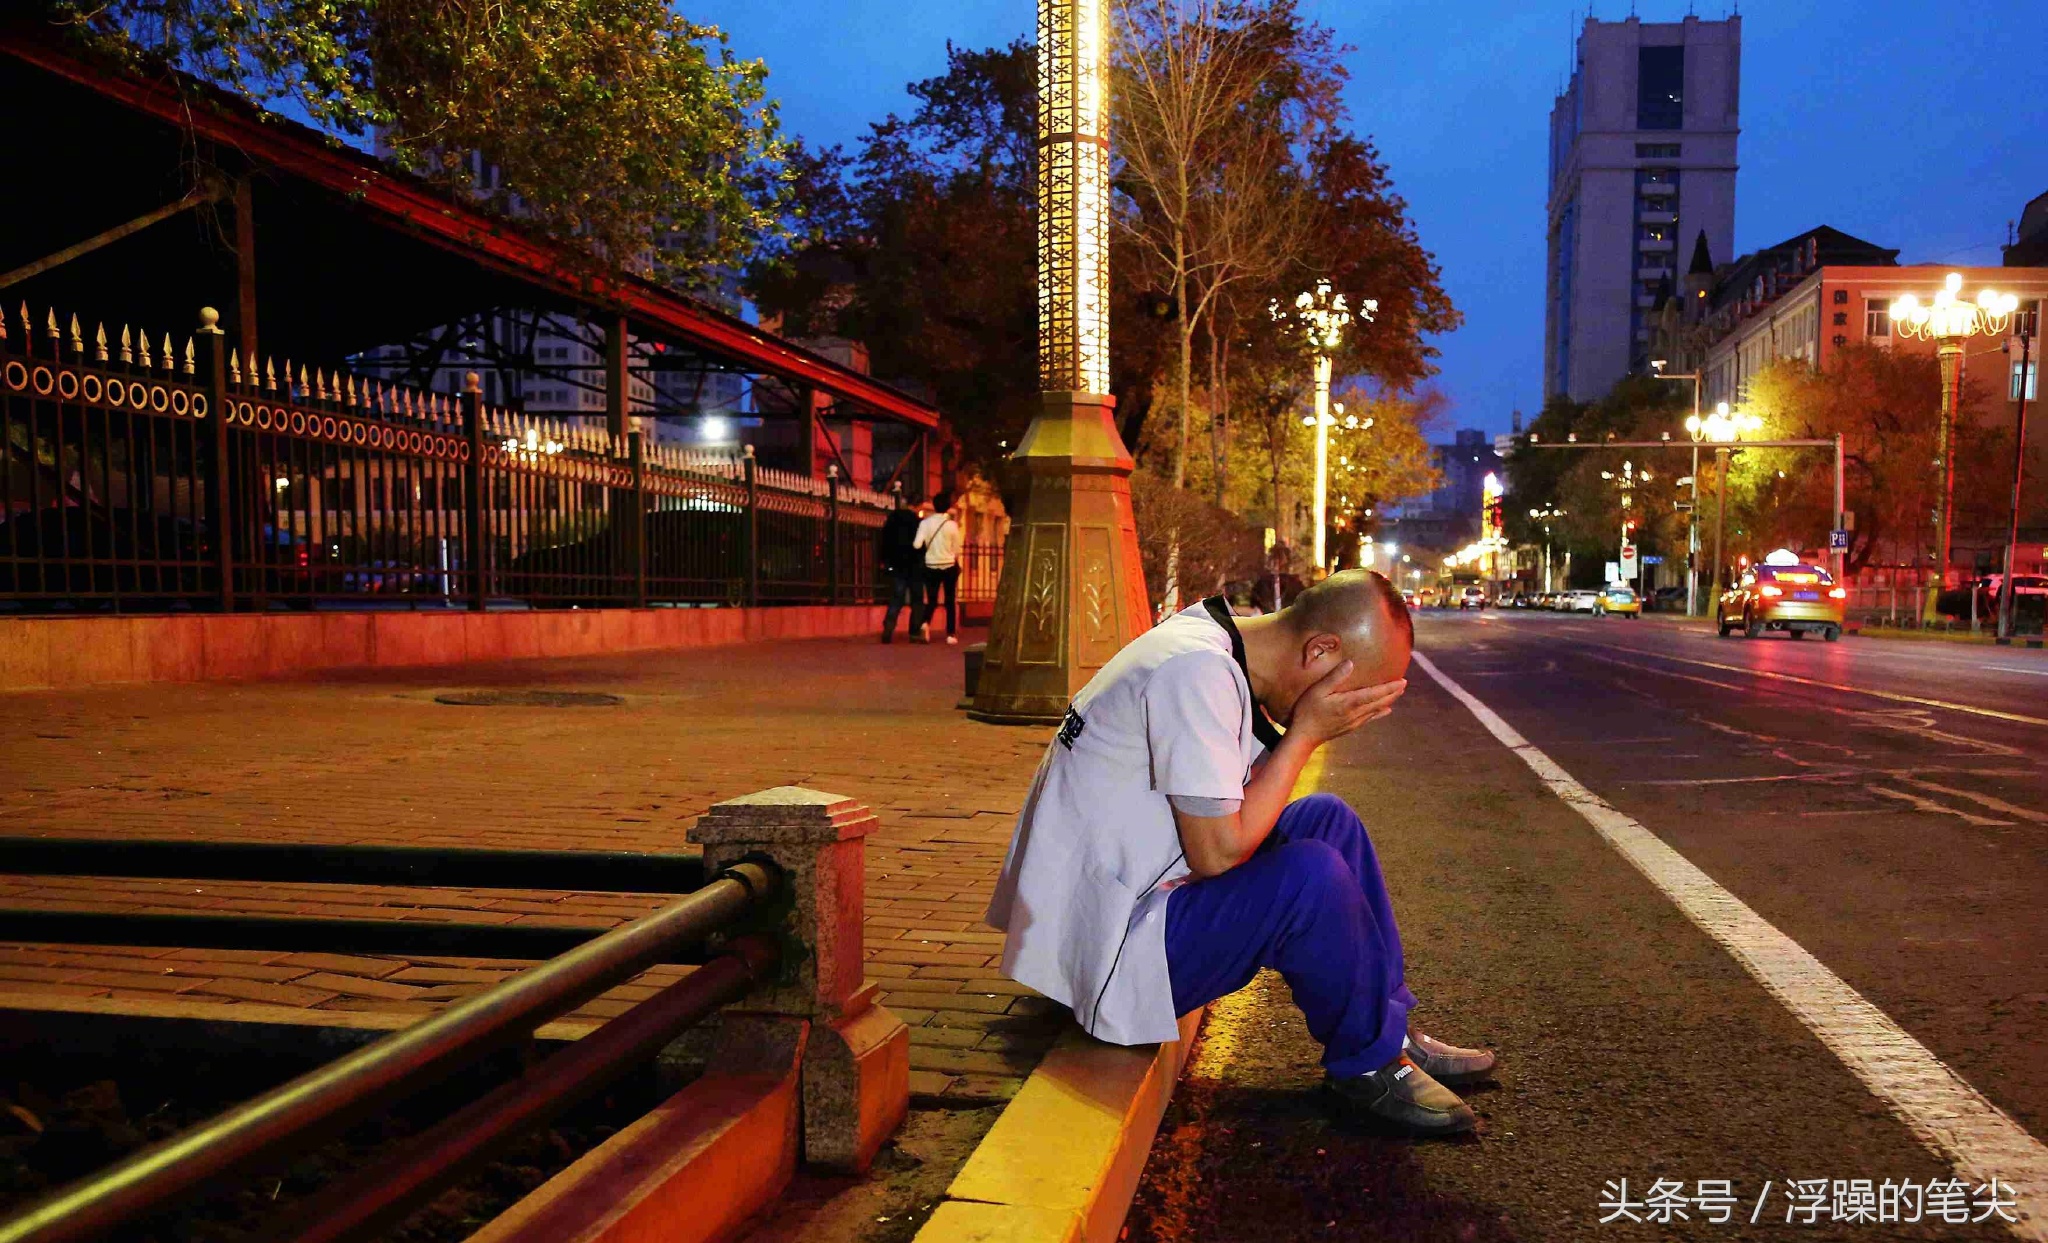 凌晨的哈尔滨街头,一男子失声痛哭,其因让人心酸!儿子